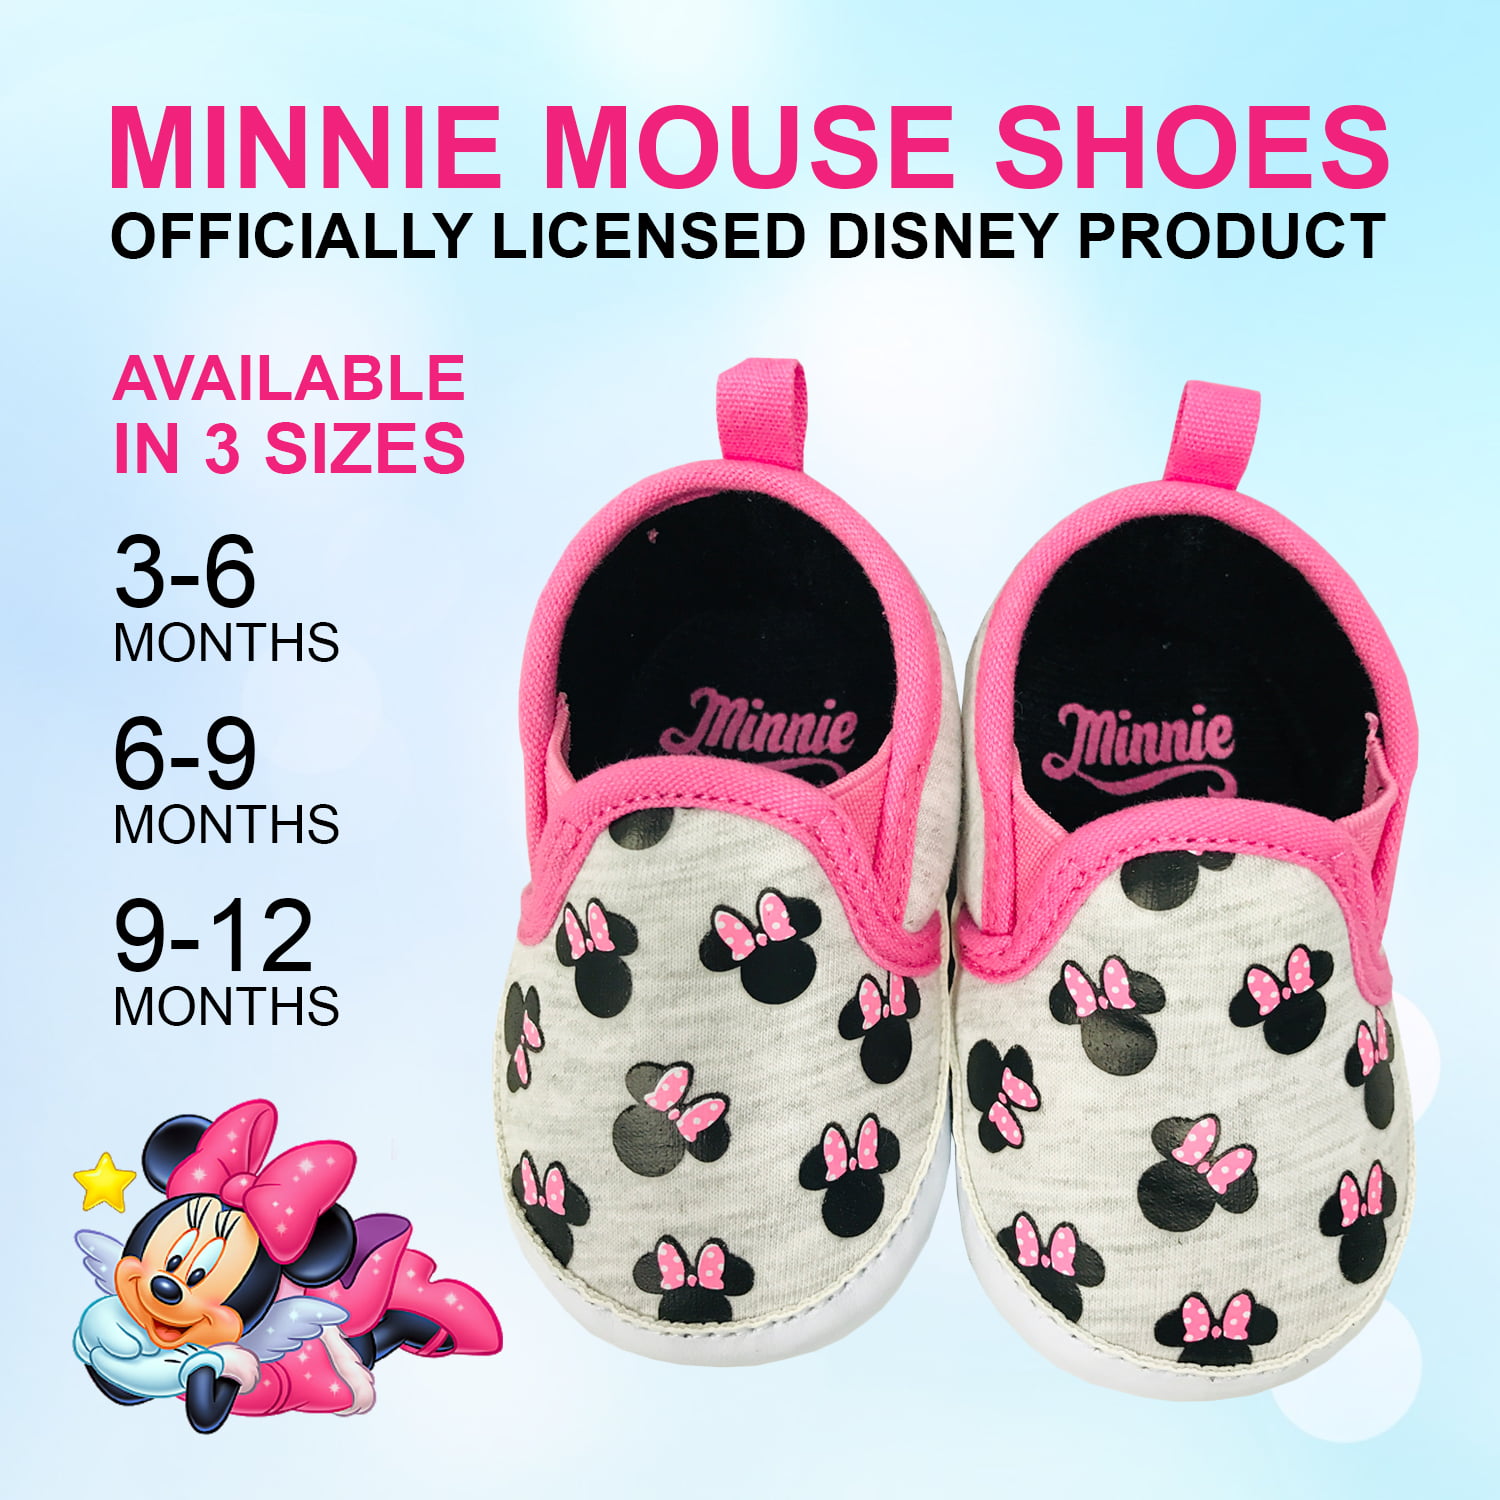 Disney Minnie Mouse Infant Soft Sole Slip-On Shoes - Walmart.com